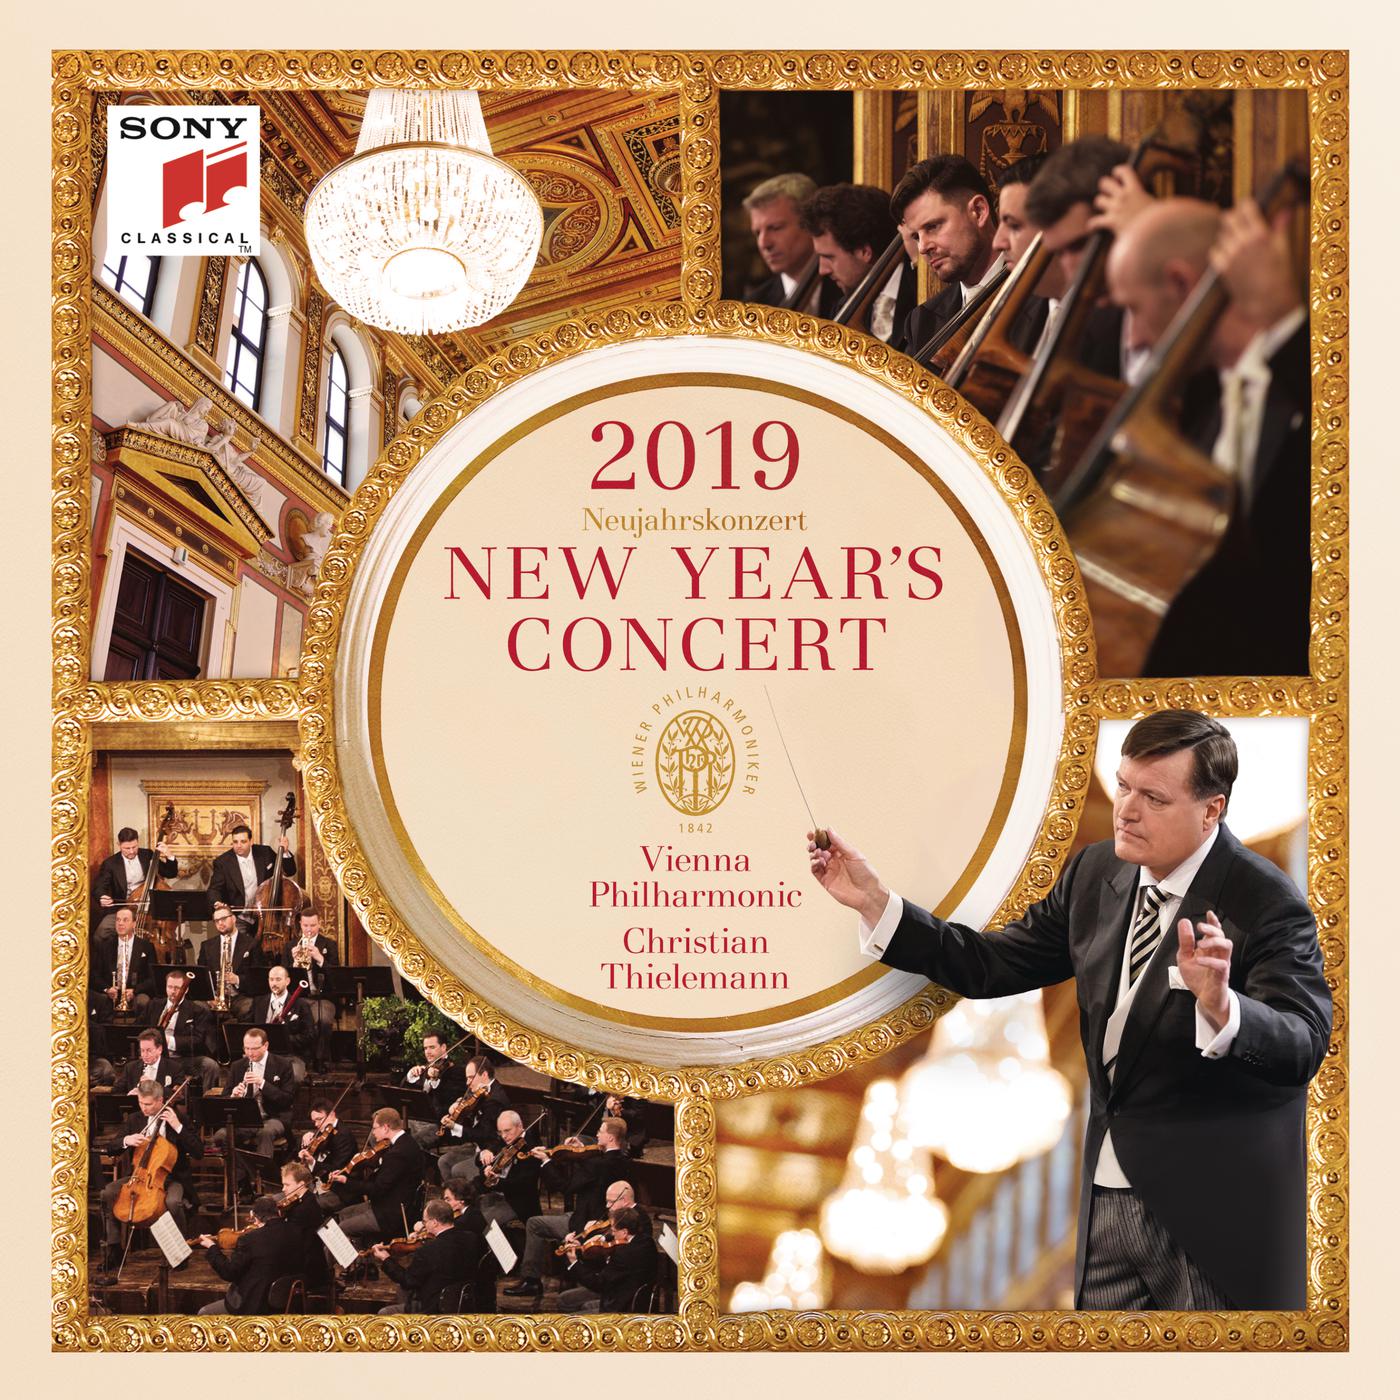 New Year's Concert 2019 / Neujahrskonzert 2019 / Concert du Nouvel An 2019